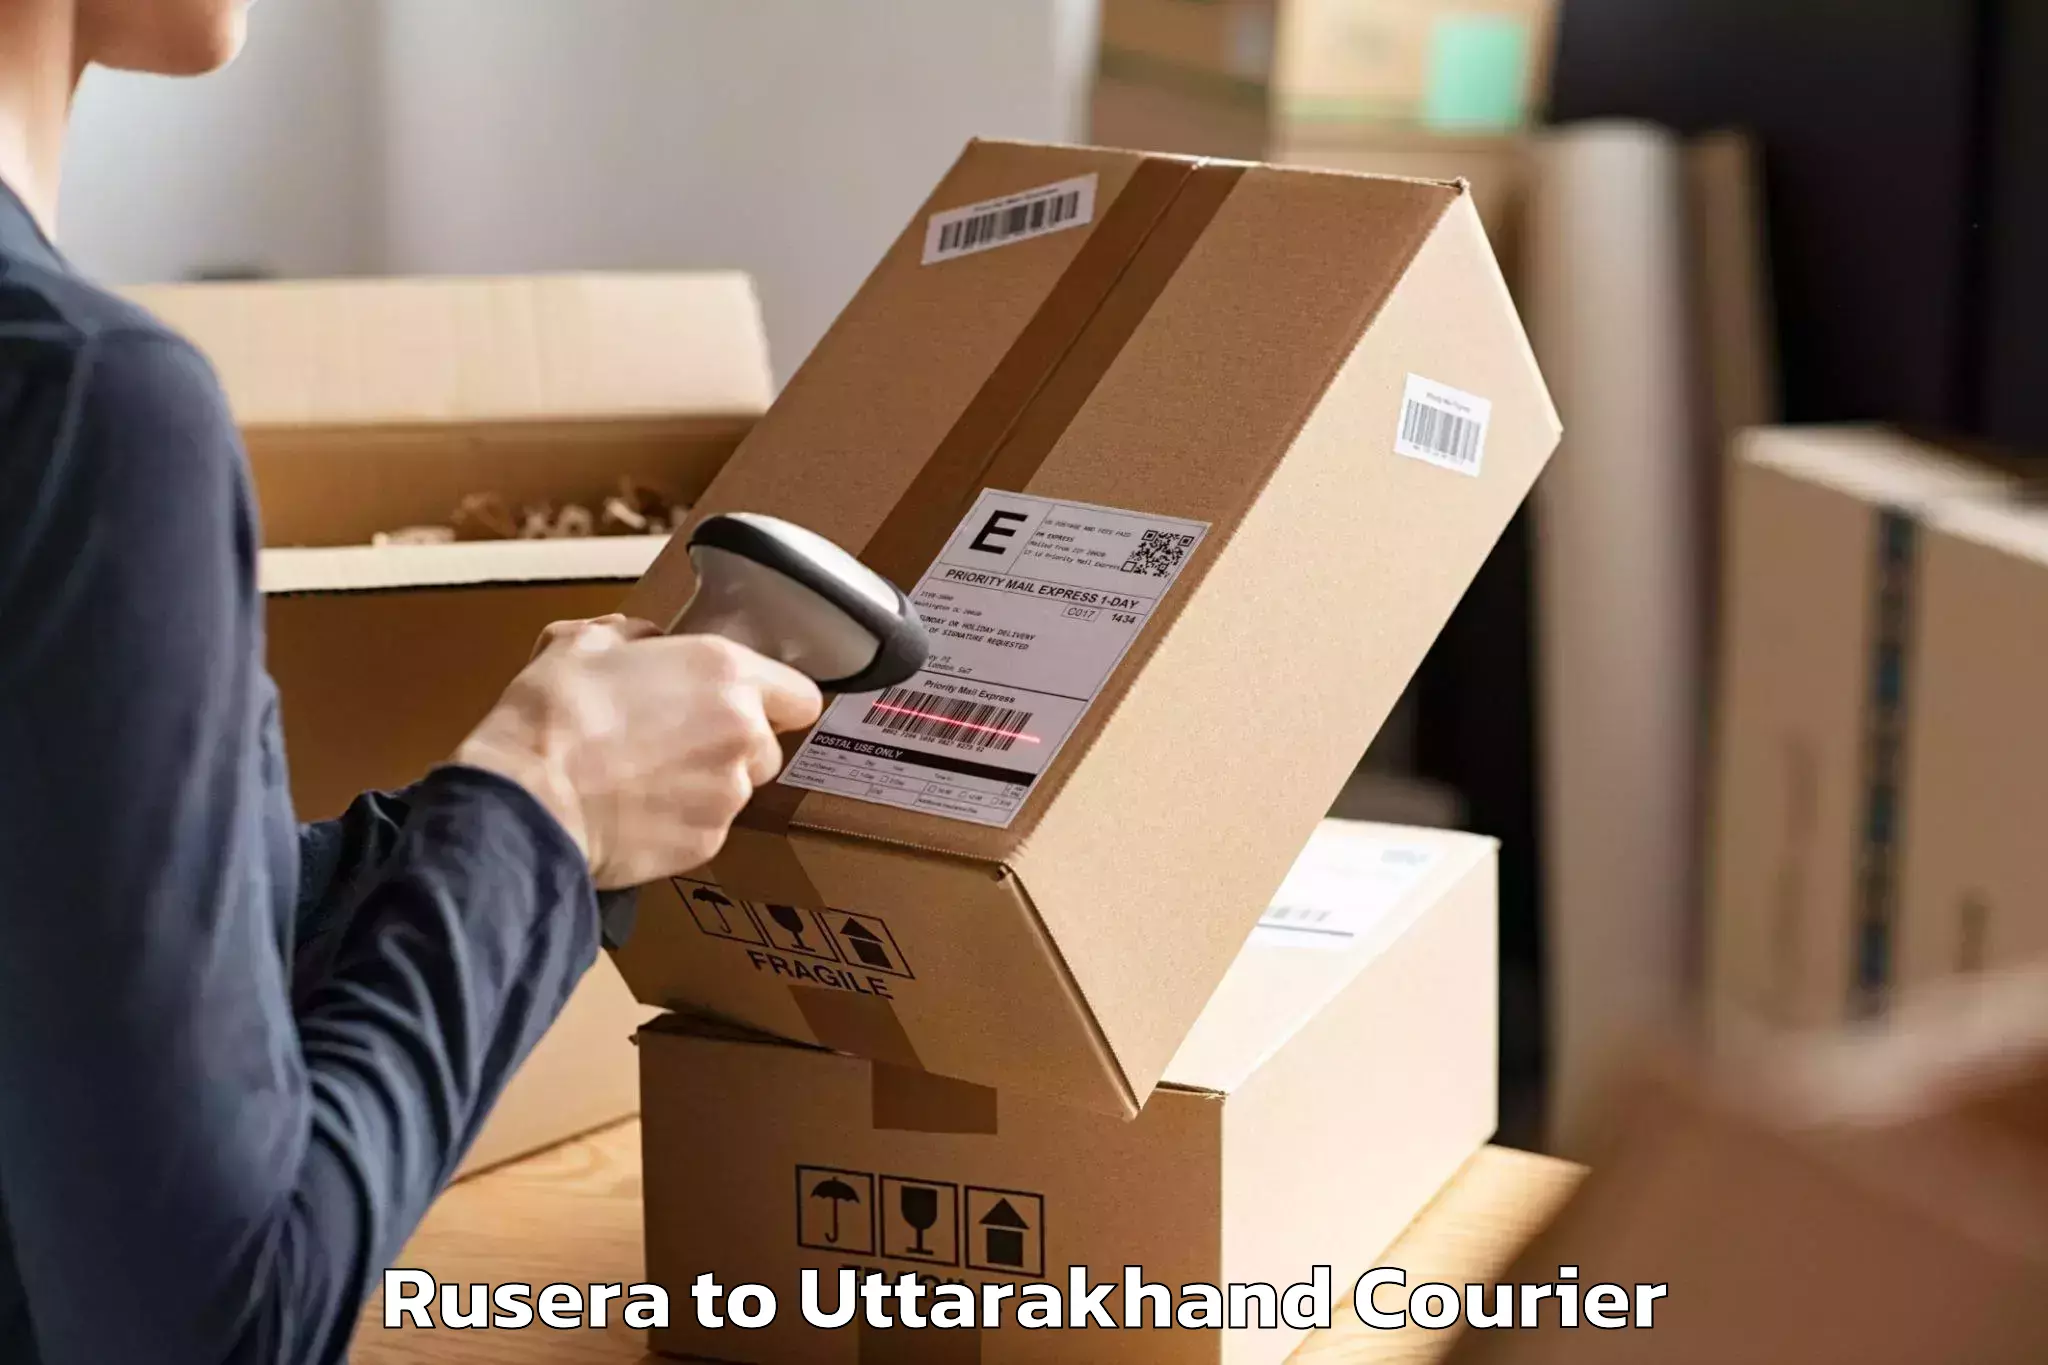 Furniture delivery service Rusera to Kotdwara